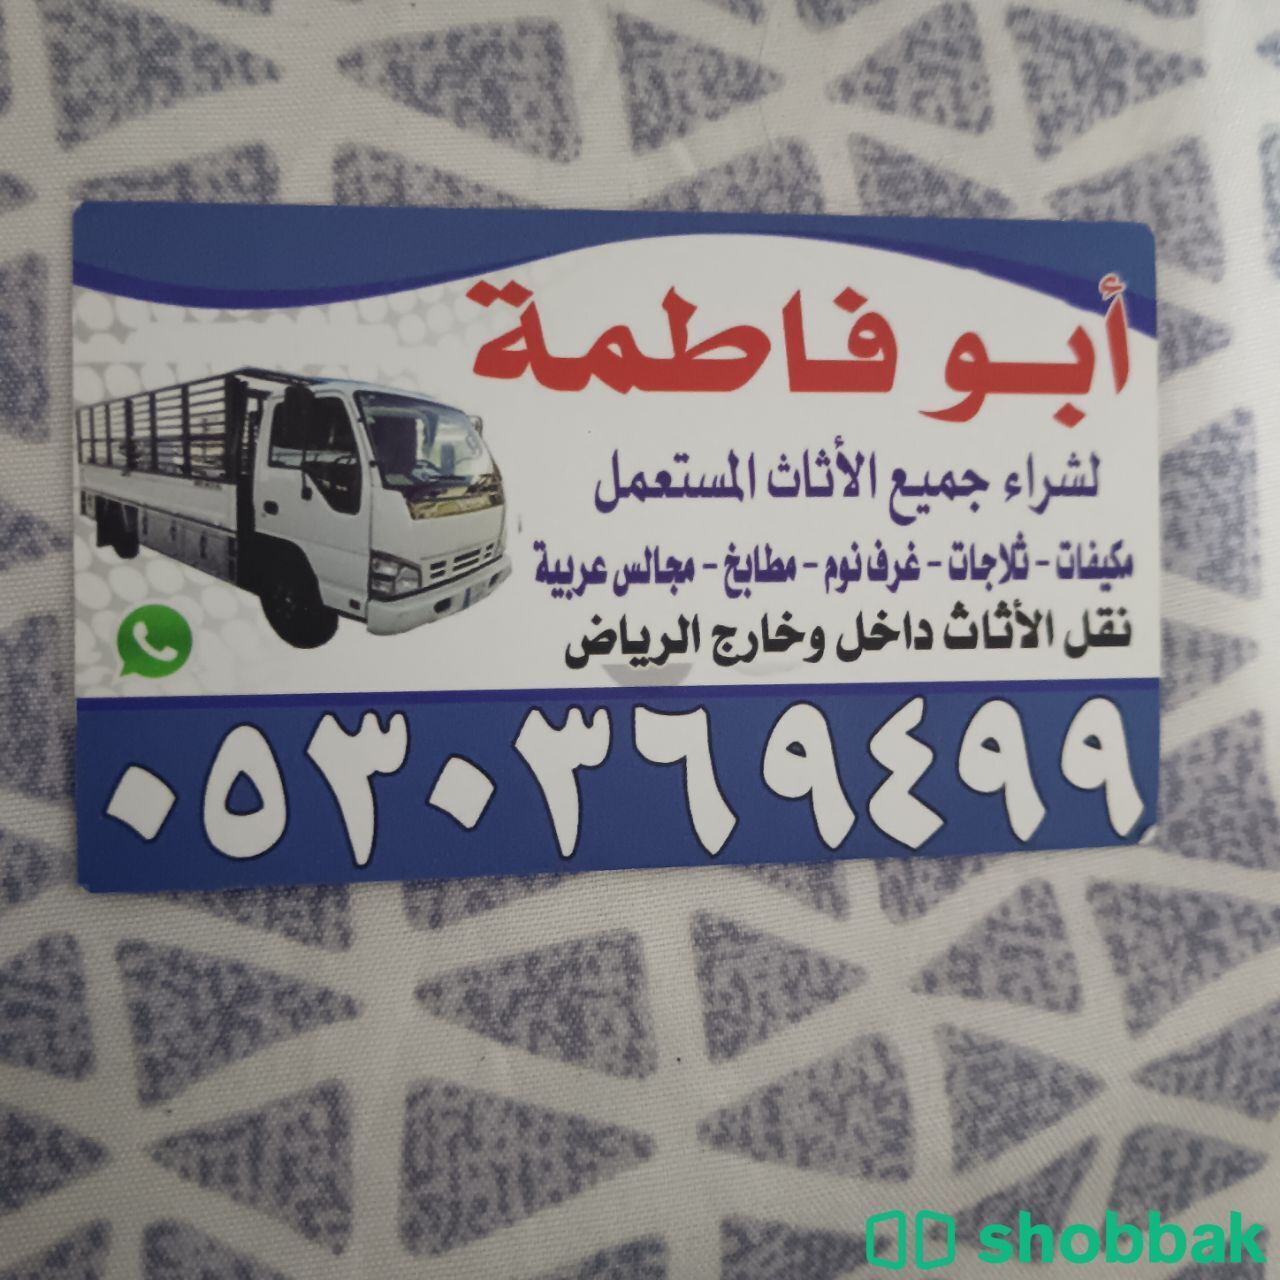 شراء أثاث مستعمل حي الندى 0530369499  Shobbak Saudi Arabia